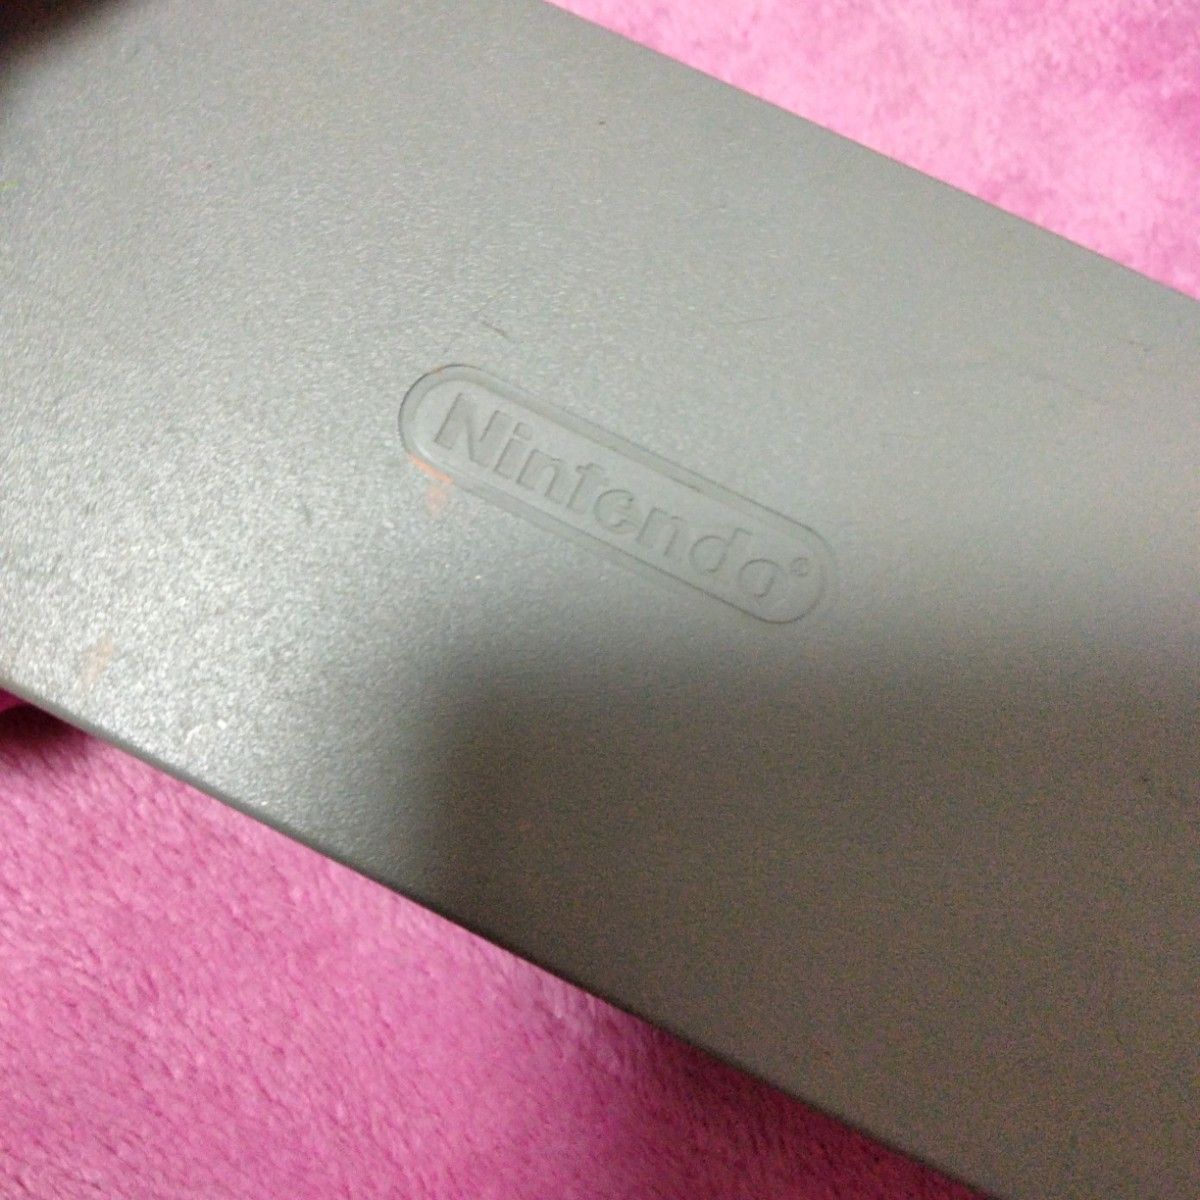 任天堂Wii U AC アダプター　ジャンク品